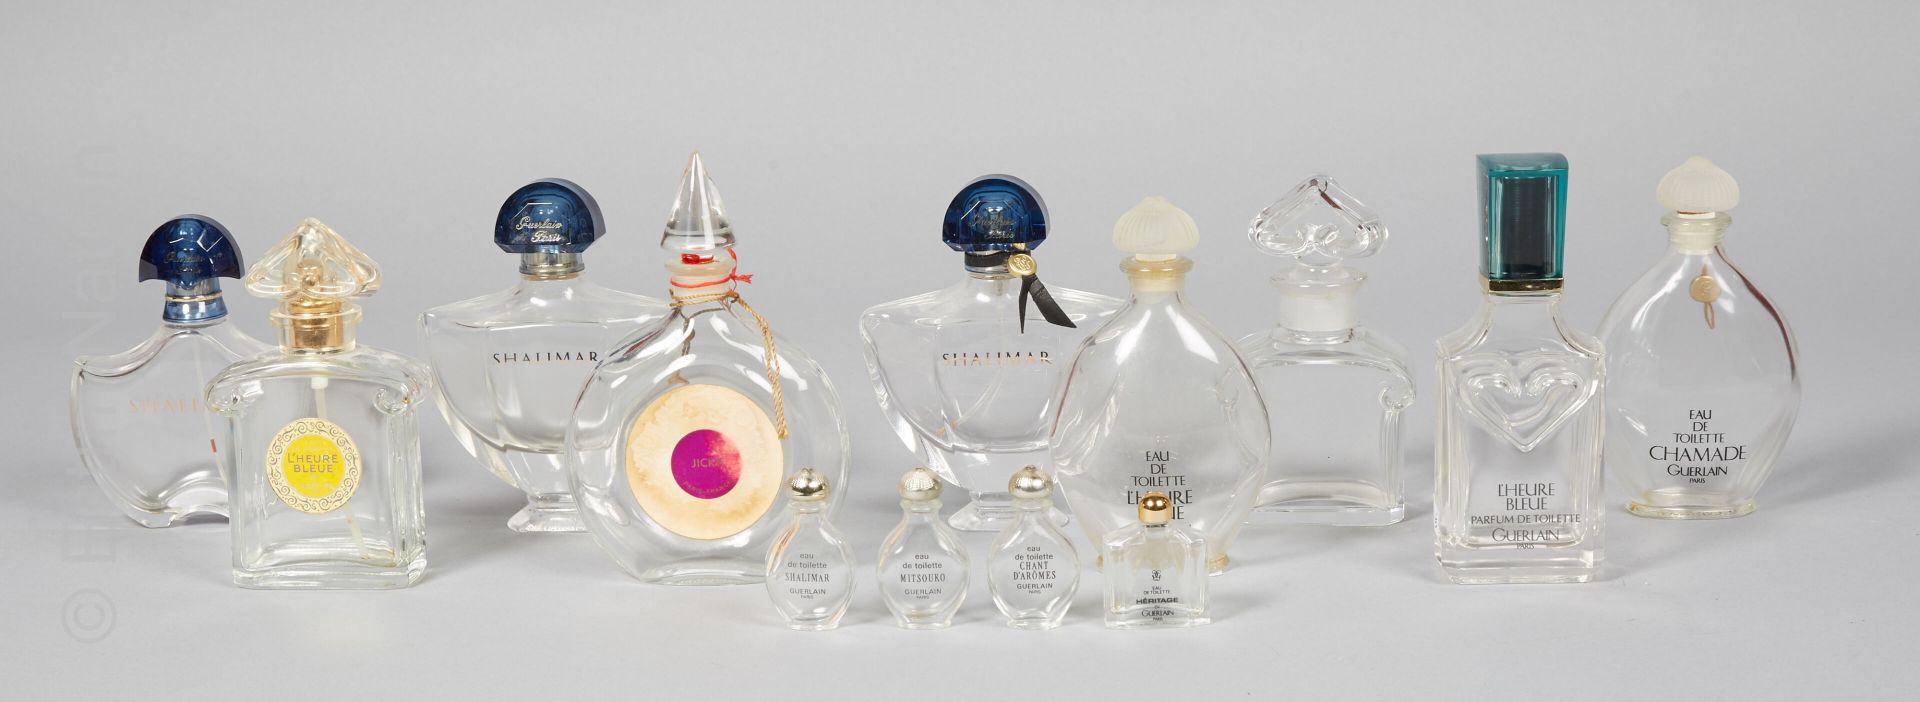 FLACONS DE PARFUM 顾尔伦



一套10个空的香水瓶和小模型，包括:



- 法国巴卡拉，模制水晶瓶，瓶塞模拟一个倒置的镂空心形，肩部有卷轴&hellip;